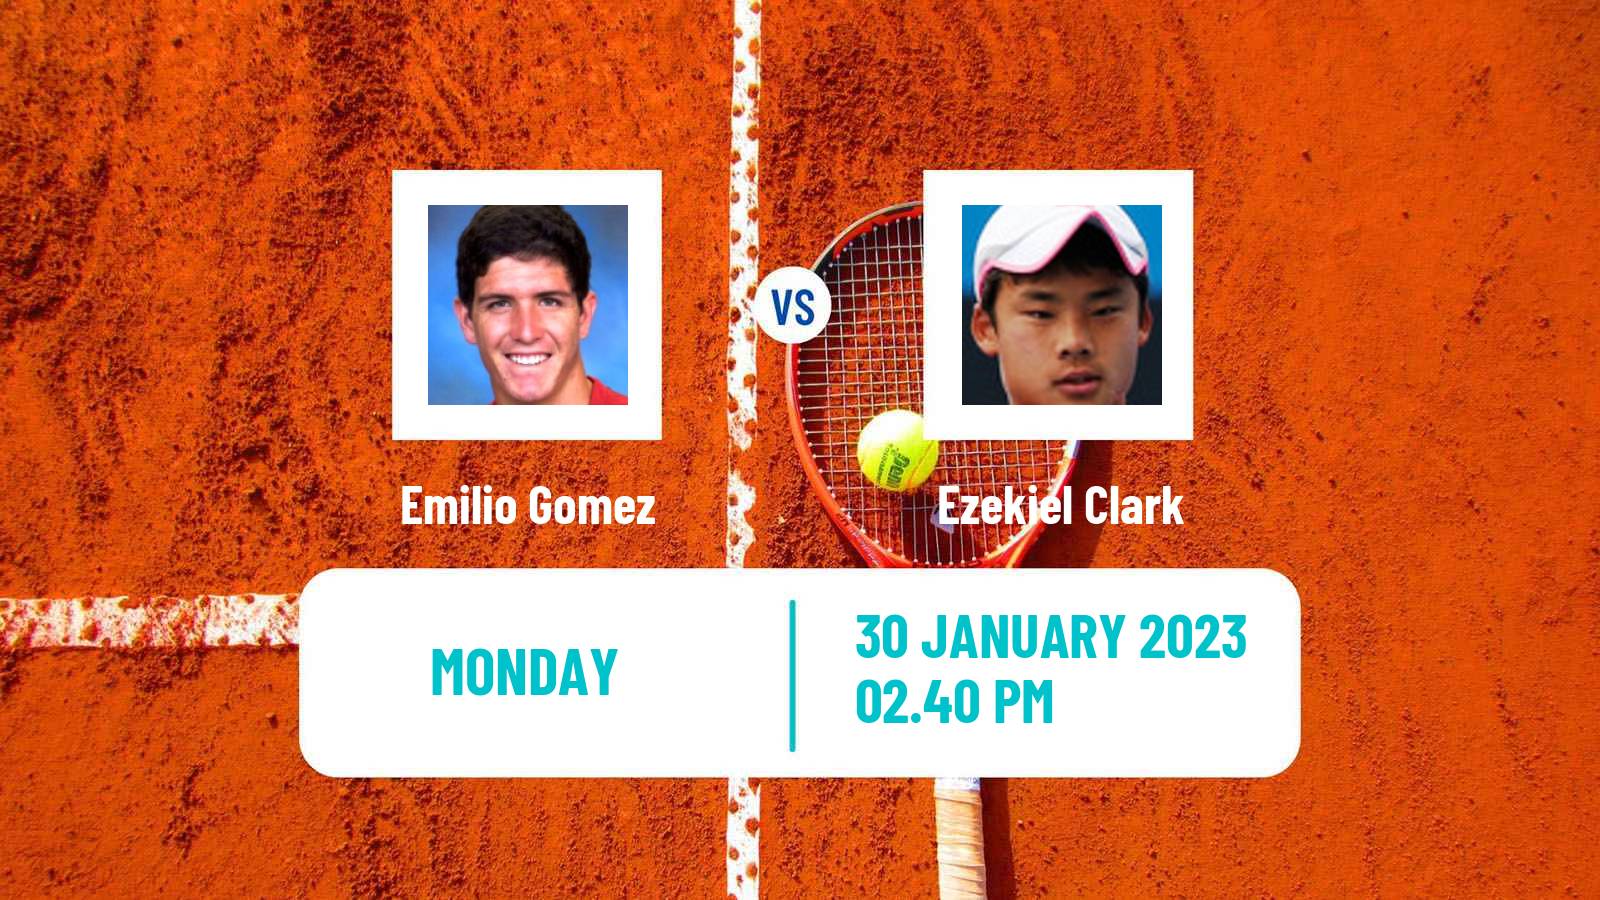 Tennis ATP Challenger Emilio Gomez - Ezekiel Clark